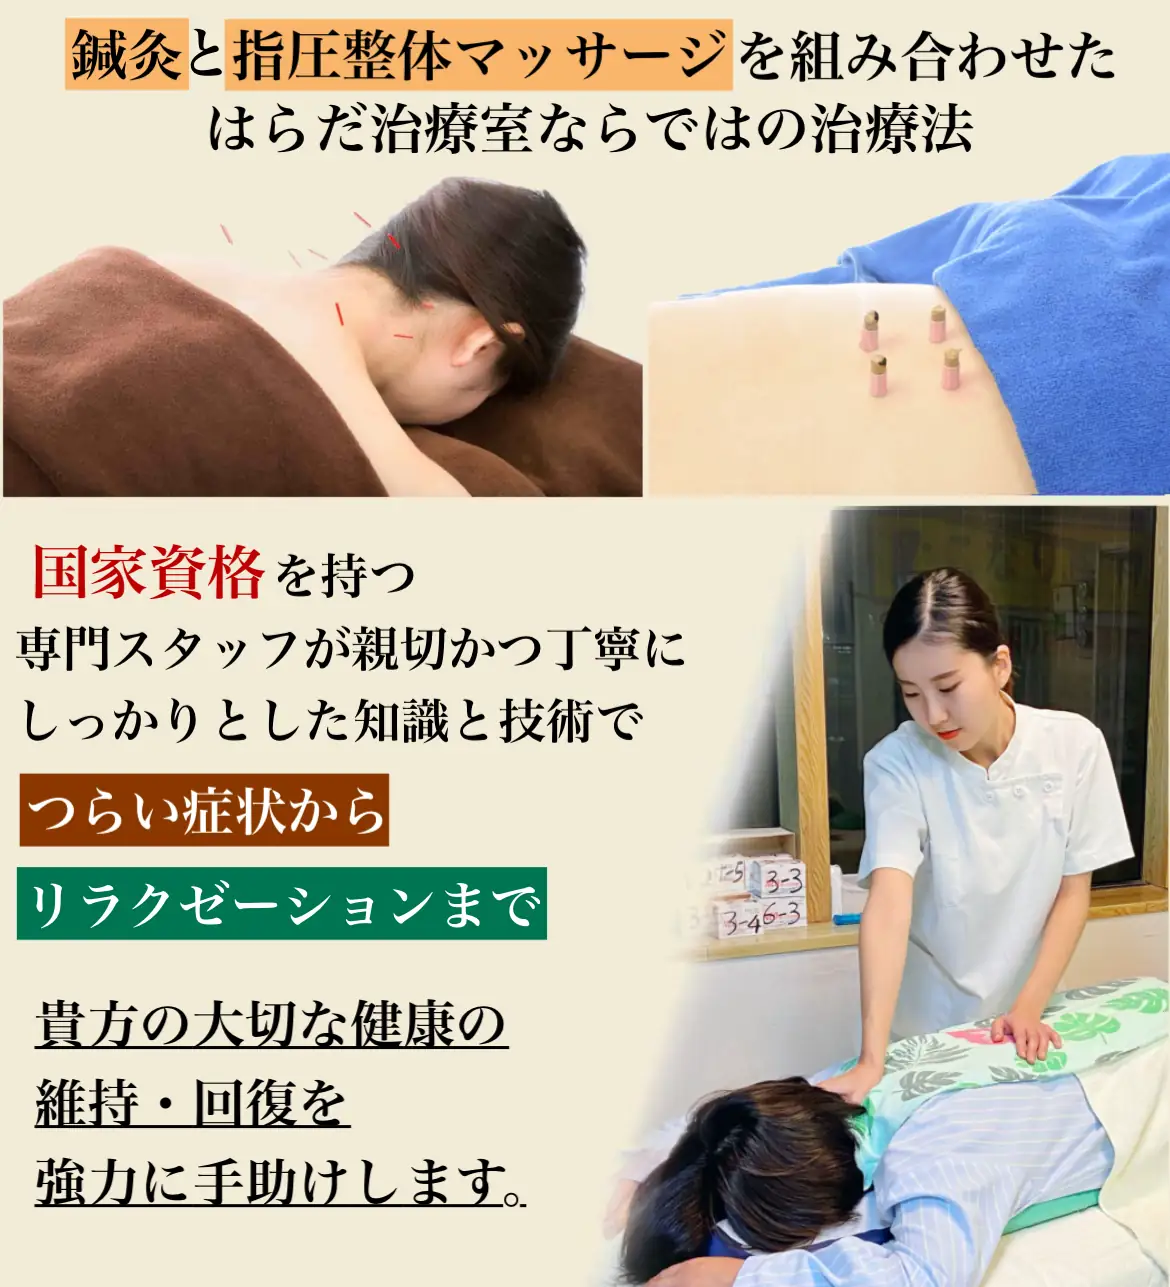 町田で腰痛にお悩みの方ははらだマッサージ治療室へ。国家資格を持つ専門スタッフによる本格的な腰痛ケアが魅力の治療院。